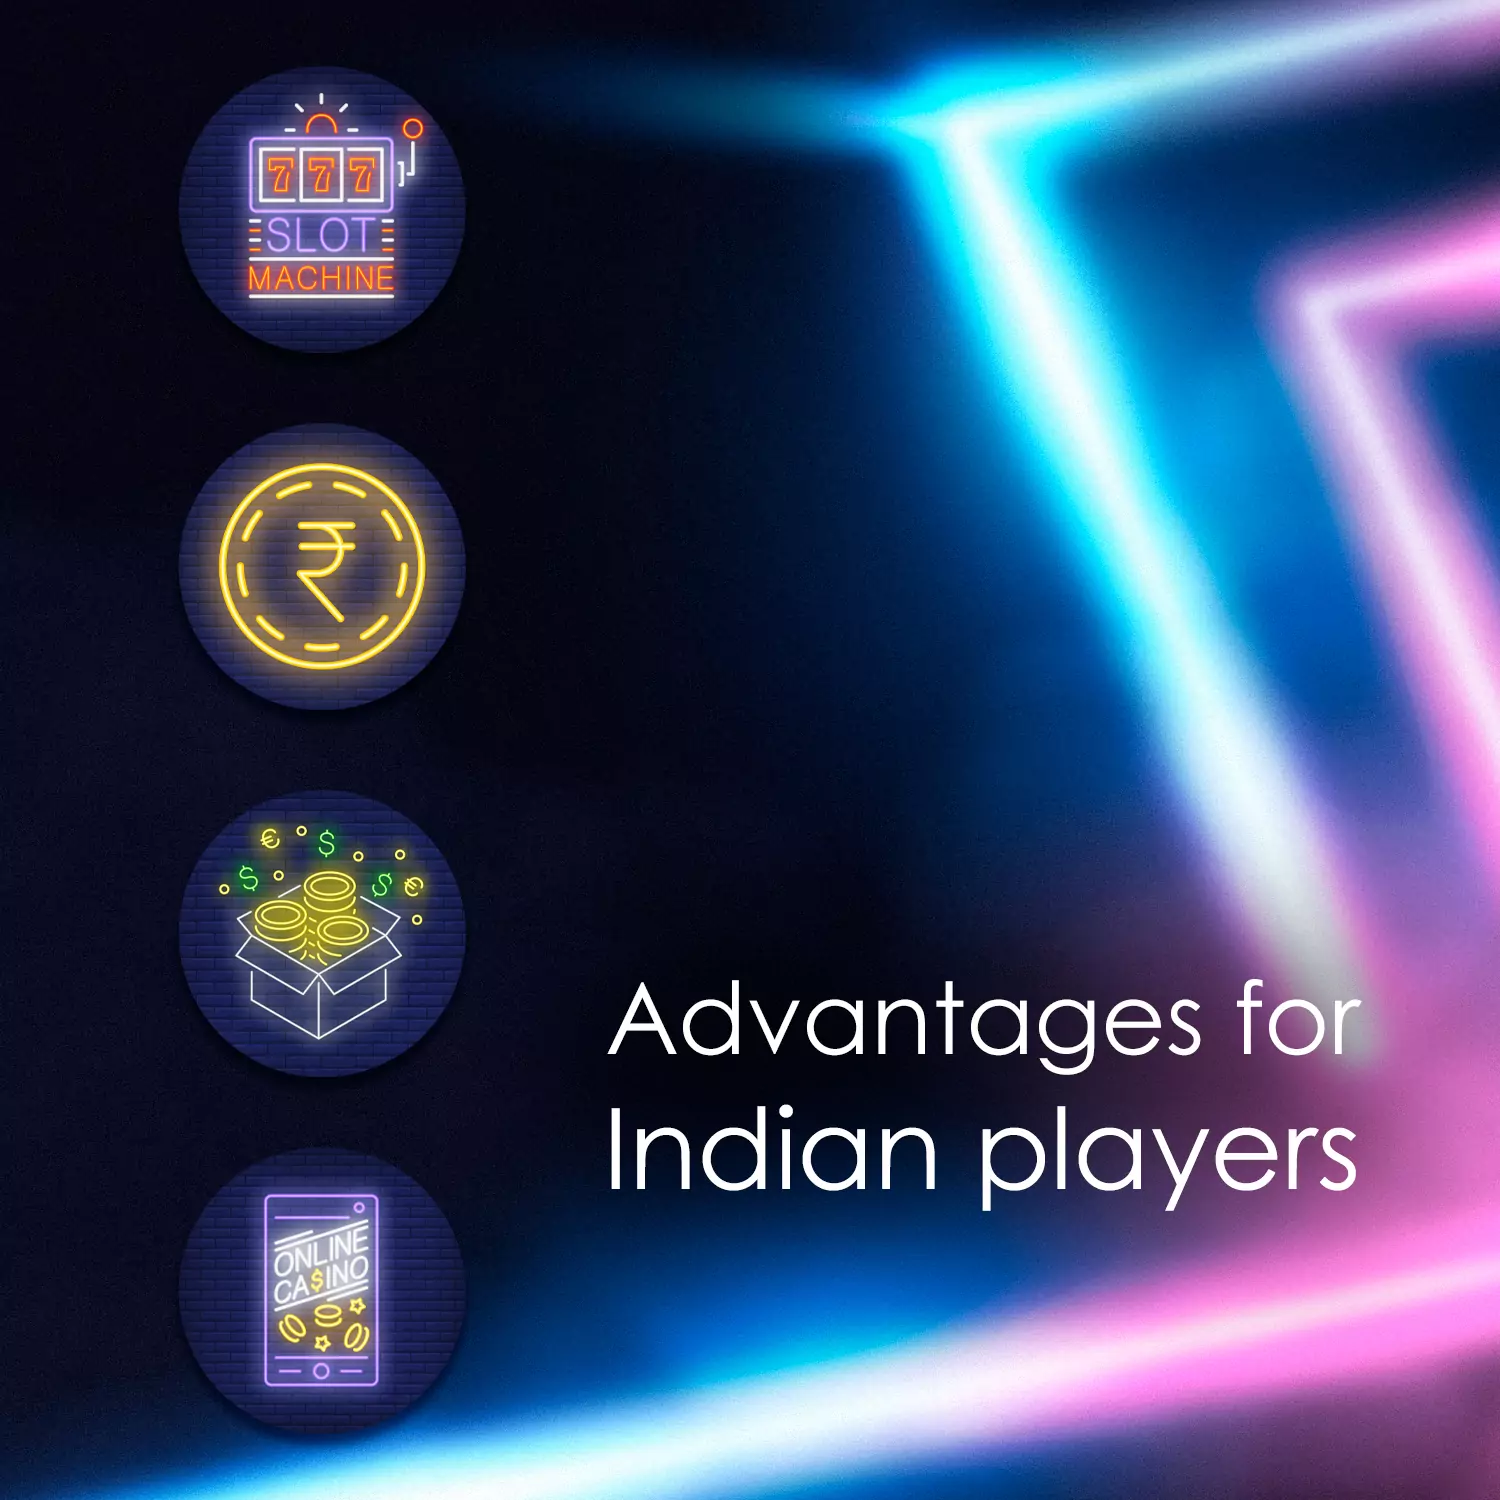 अन्य सट्टेबाज कार्यालय साइटों की तुलना में, Pin-Up साइट पर भारतीय खिलाड़ियों के लिए बहुत सारे फायदे हैं।